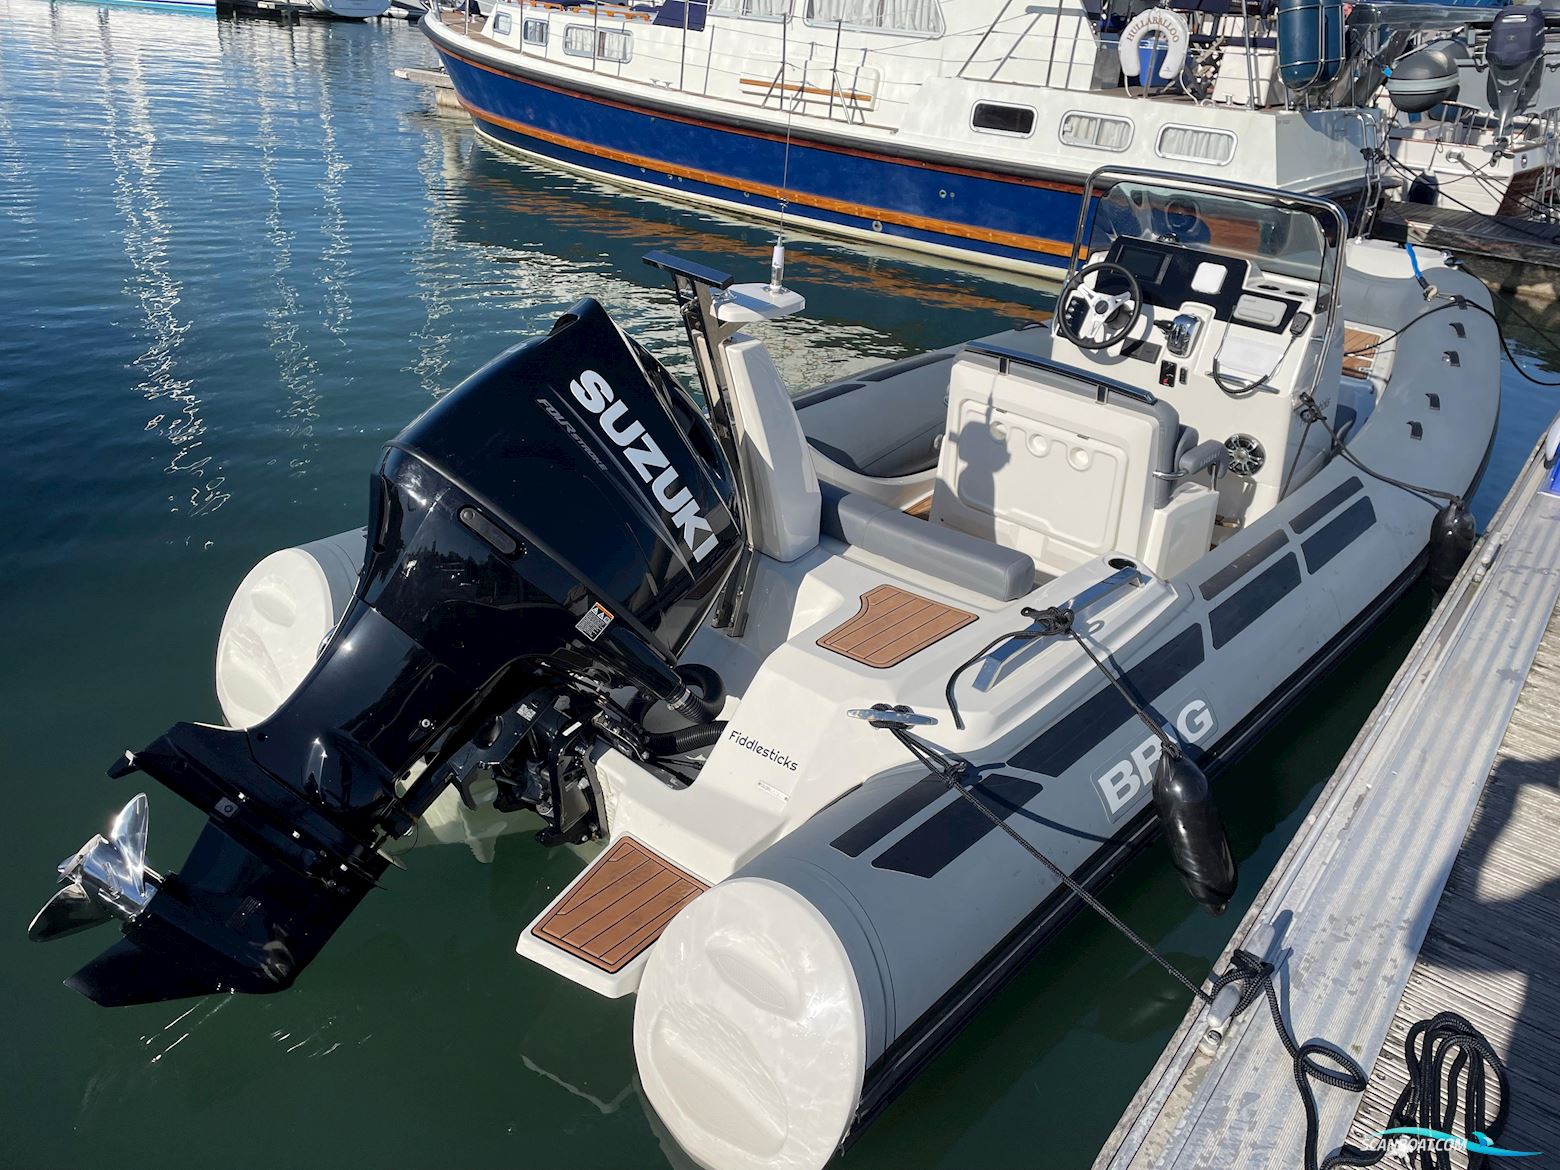 BRIG RIBs Eagle 6.7 Motorbåt 2021, med Suzuki motor, England